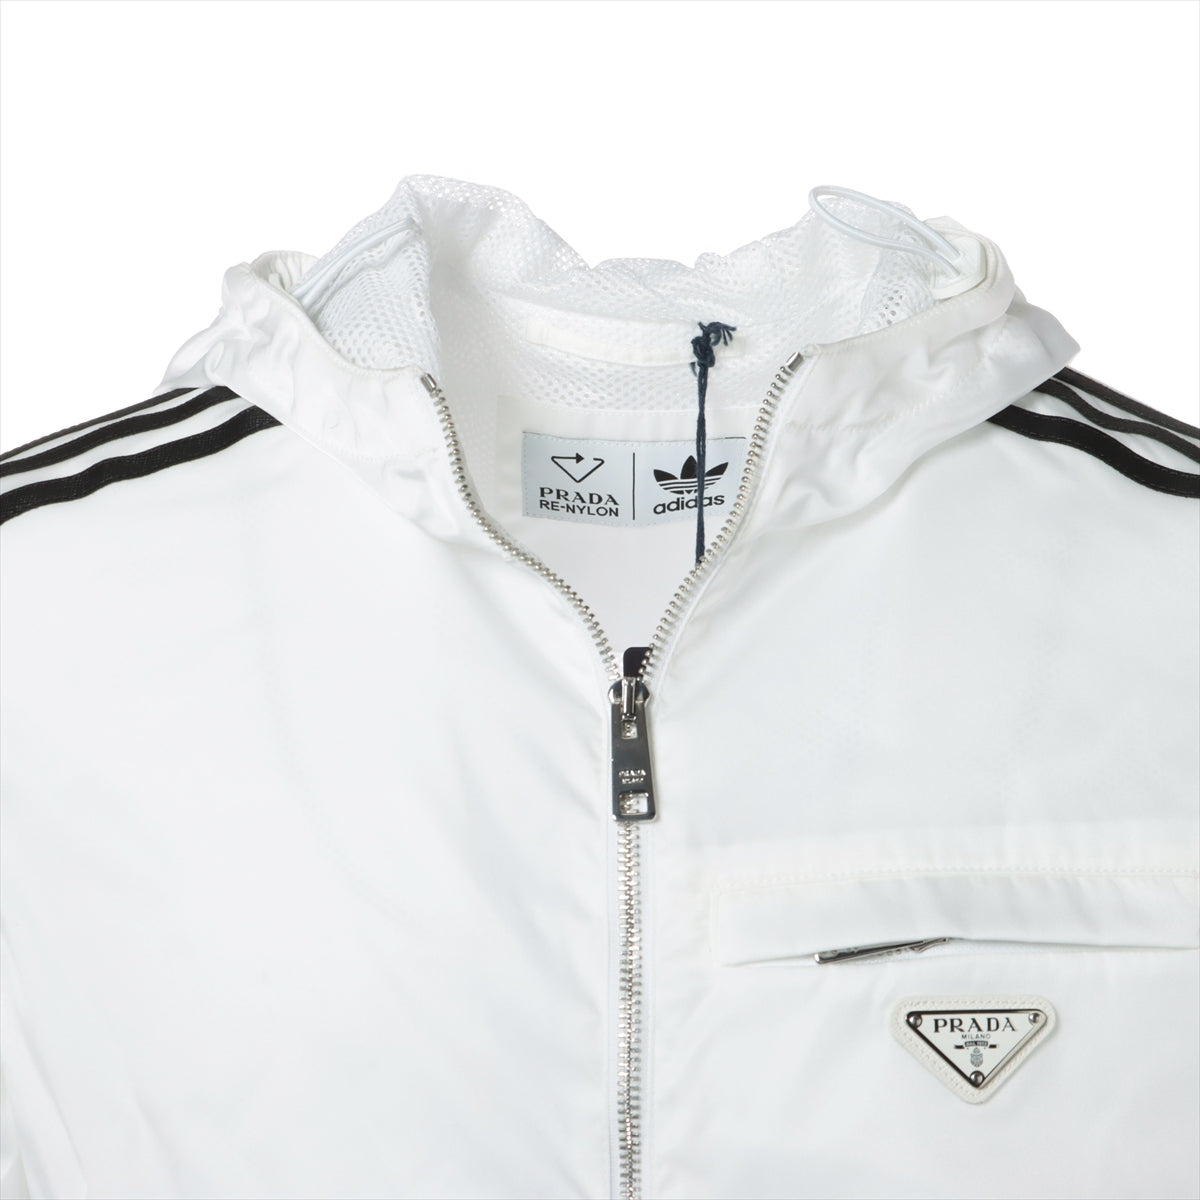 Prada x Adidas Triangle logo 21AW Nylon Jacket 44 Men's White  RE-NYLON track jacket SGB964